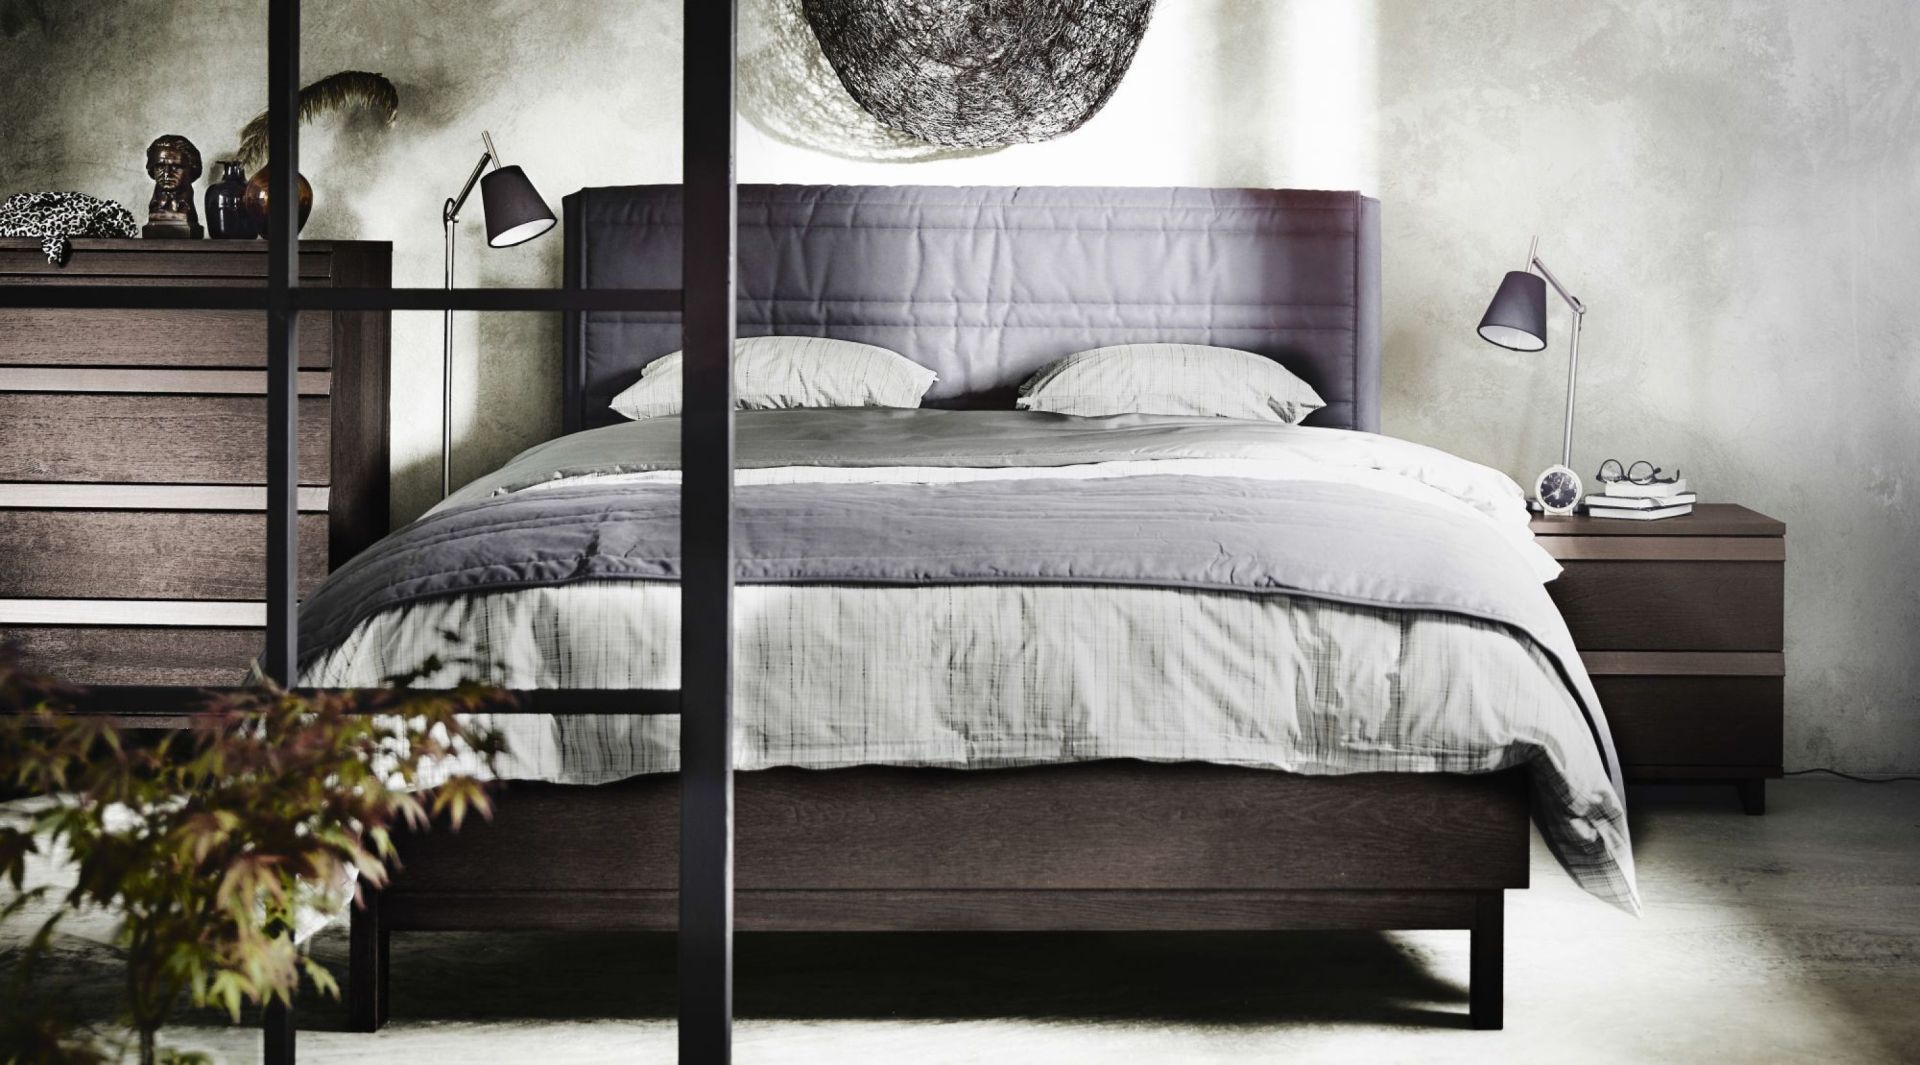 Miękki zagłówek łóżka Oppland zapewnia wygodę podczas siedzenia. Dużym atutem jest to, że materiał z niego można zdjąć do prania. Fot. IKEA